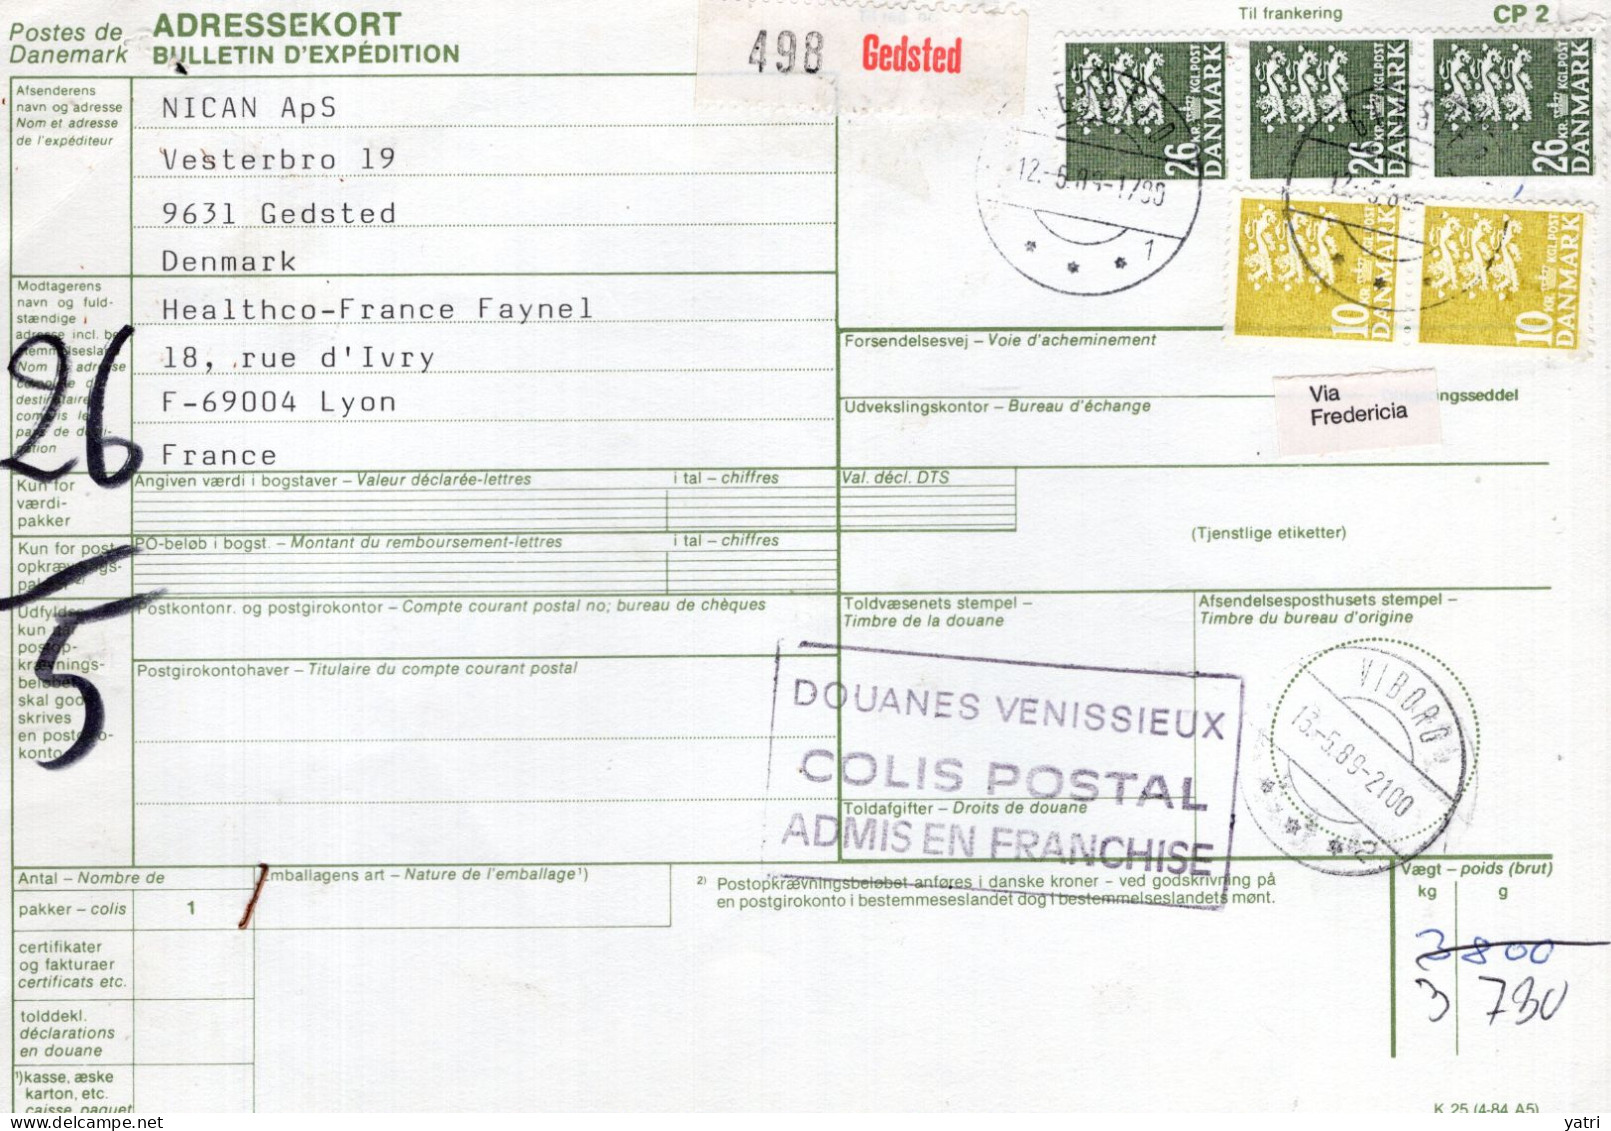 Danimarca (1989) - Bollettino Pacchi Per La Francia - Briefe U. Dokumente